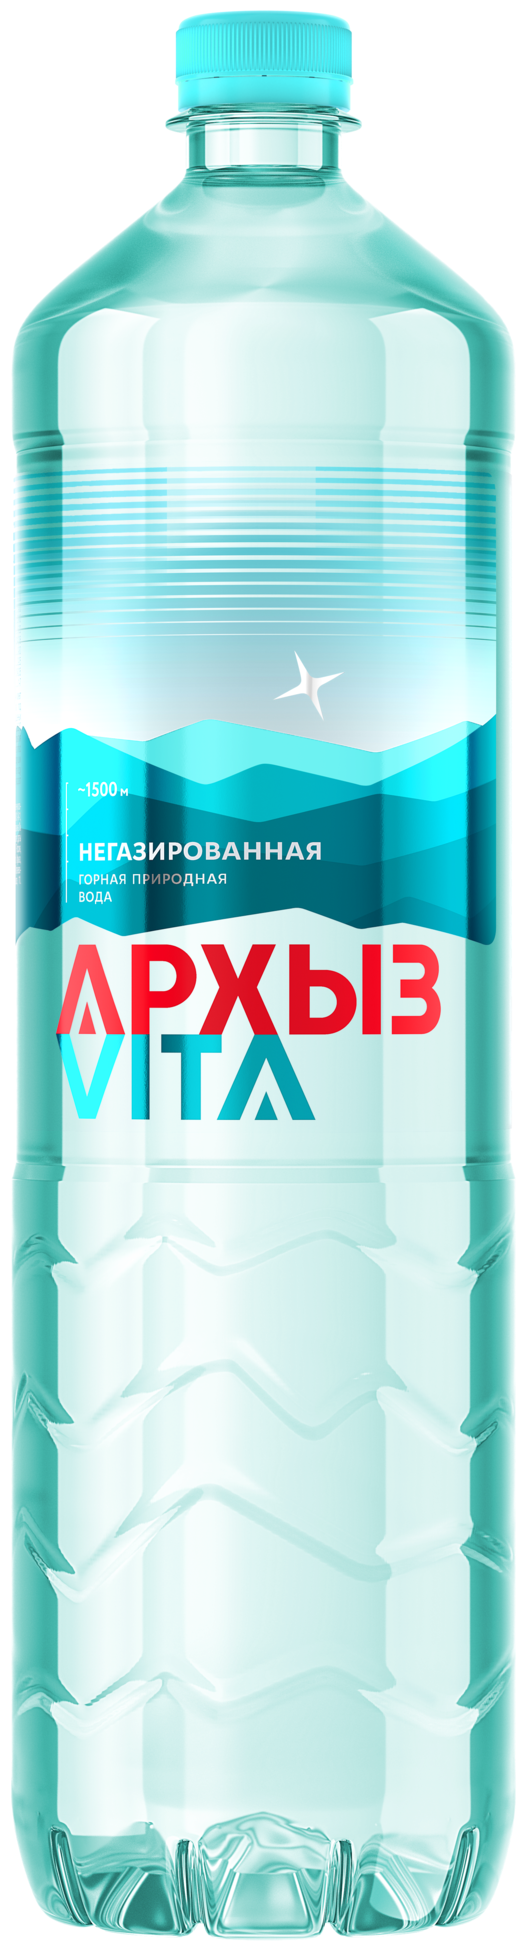 Вода минеральная негазированная "Архыз" Vita 1.5 л, Россия - фотография № 3